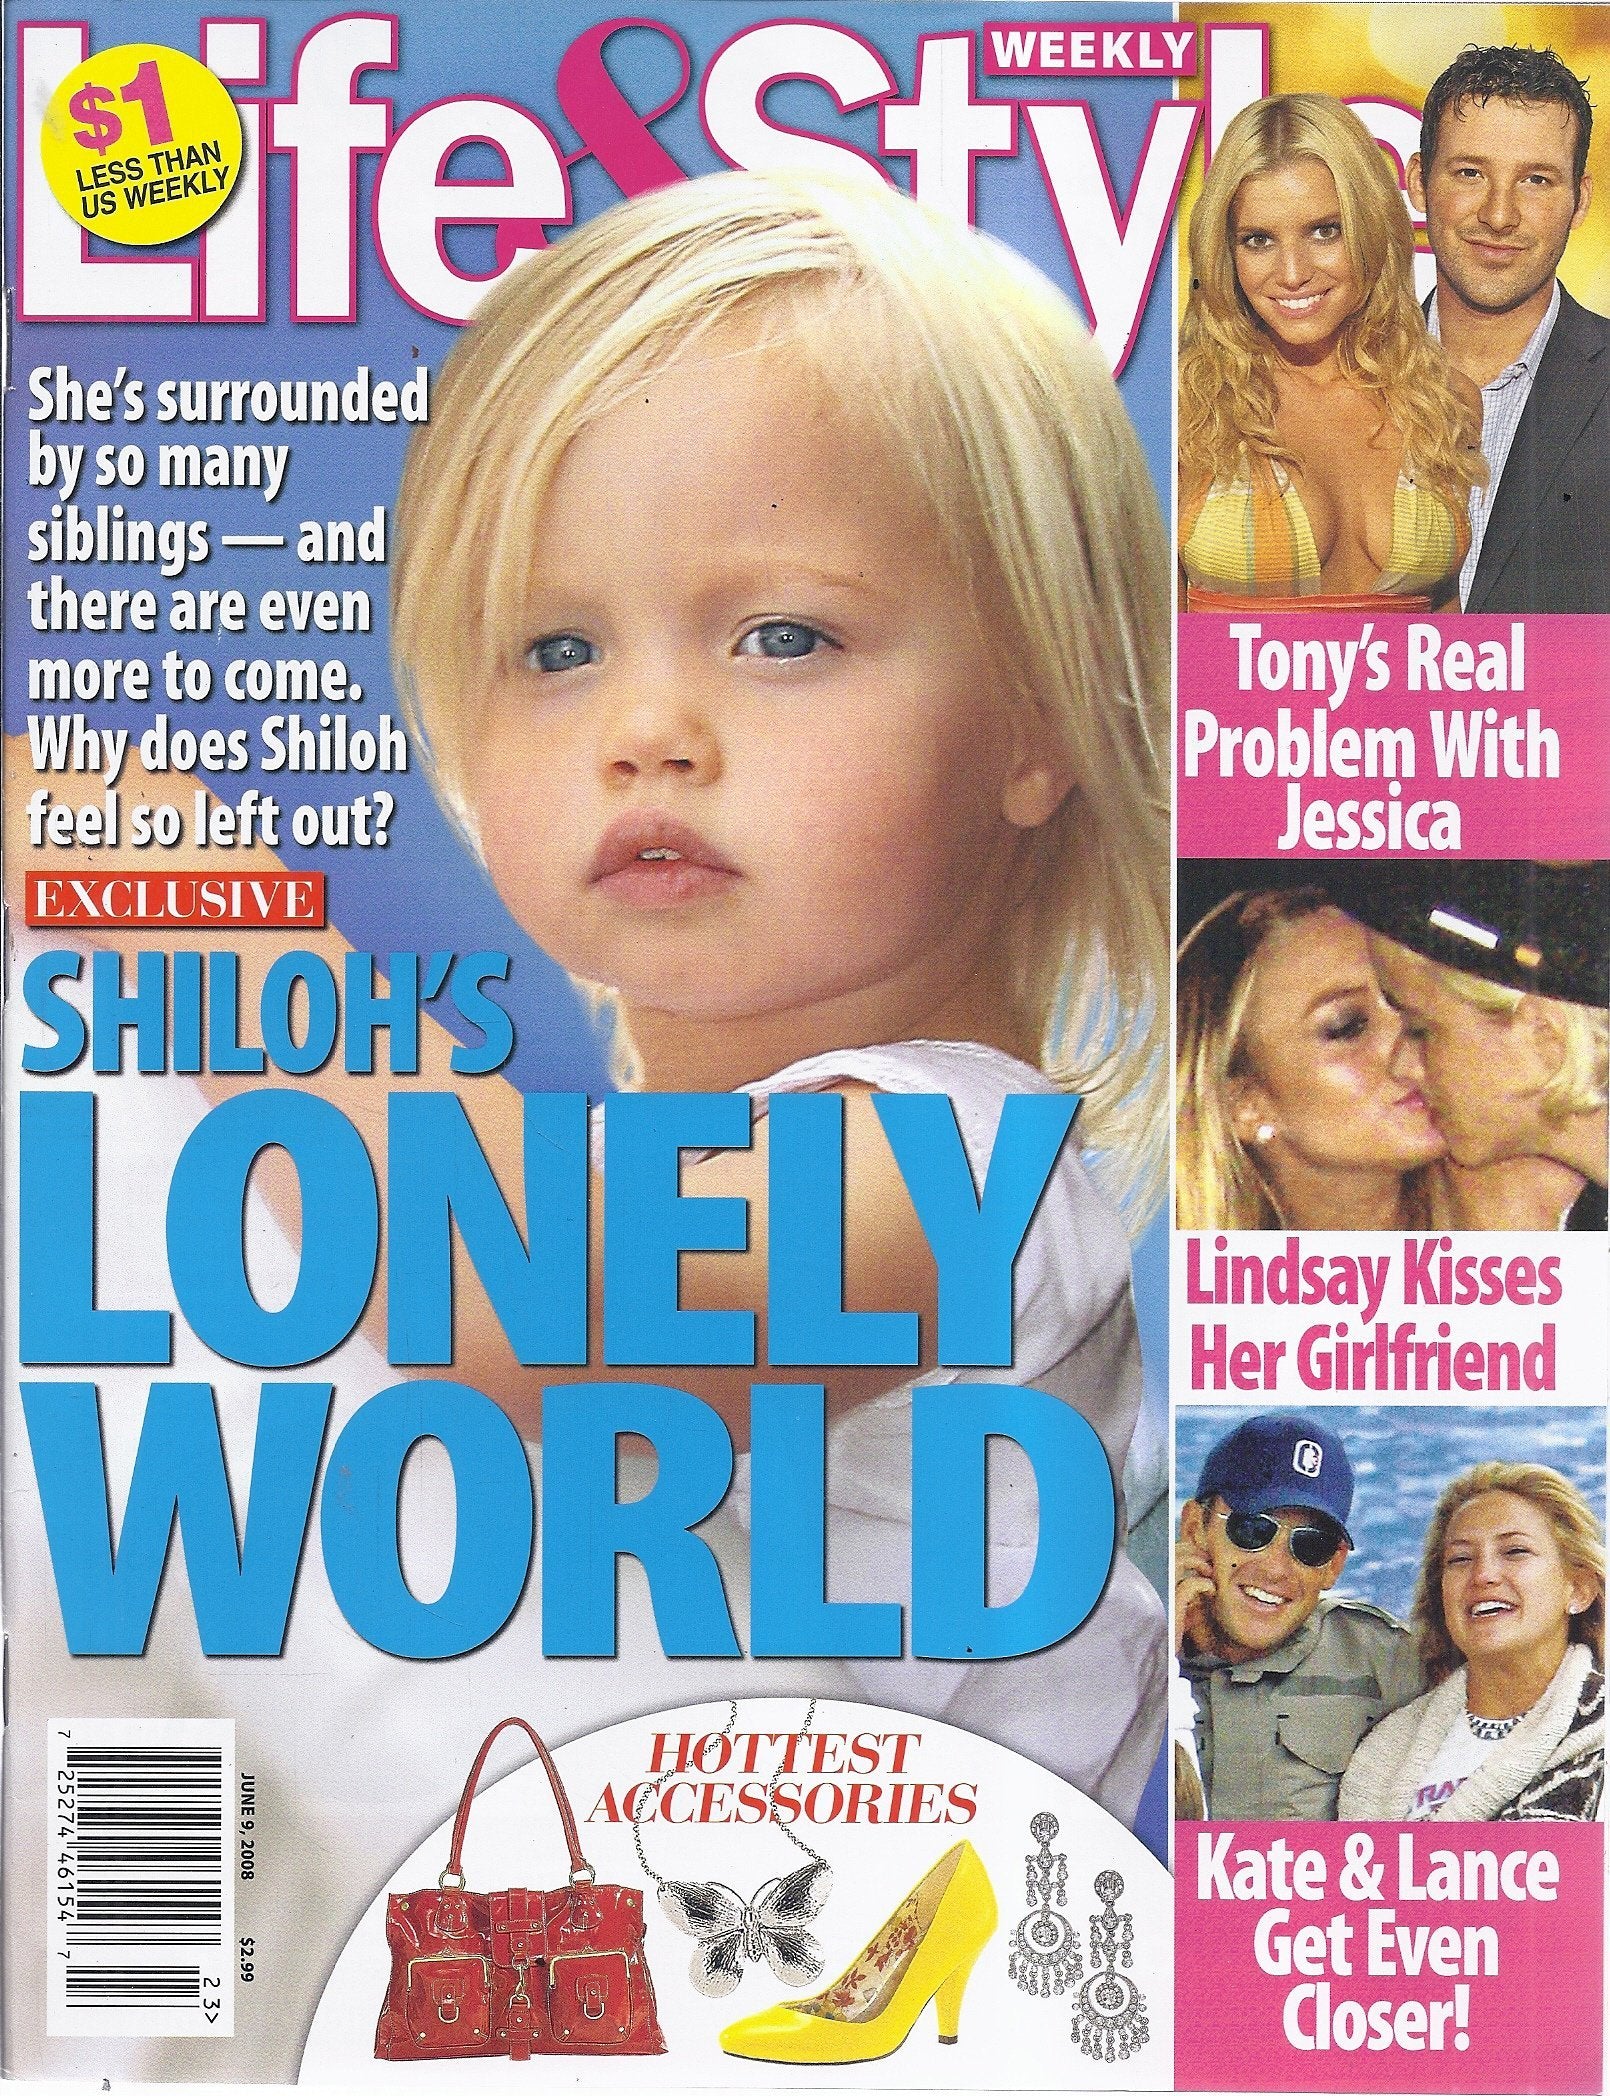 Life & Style Weekly 2008 Magazine - Erika Peña